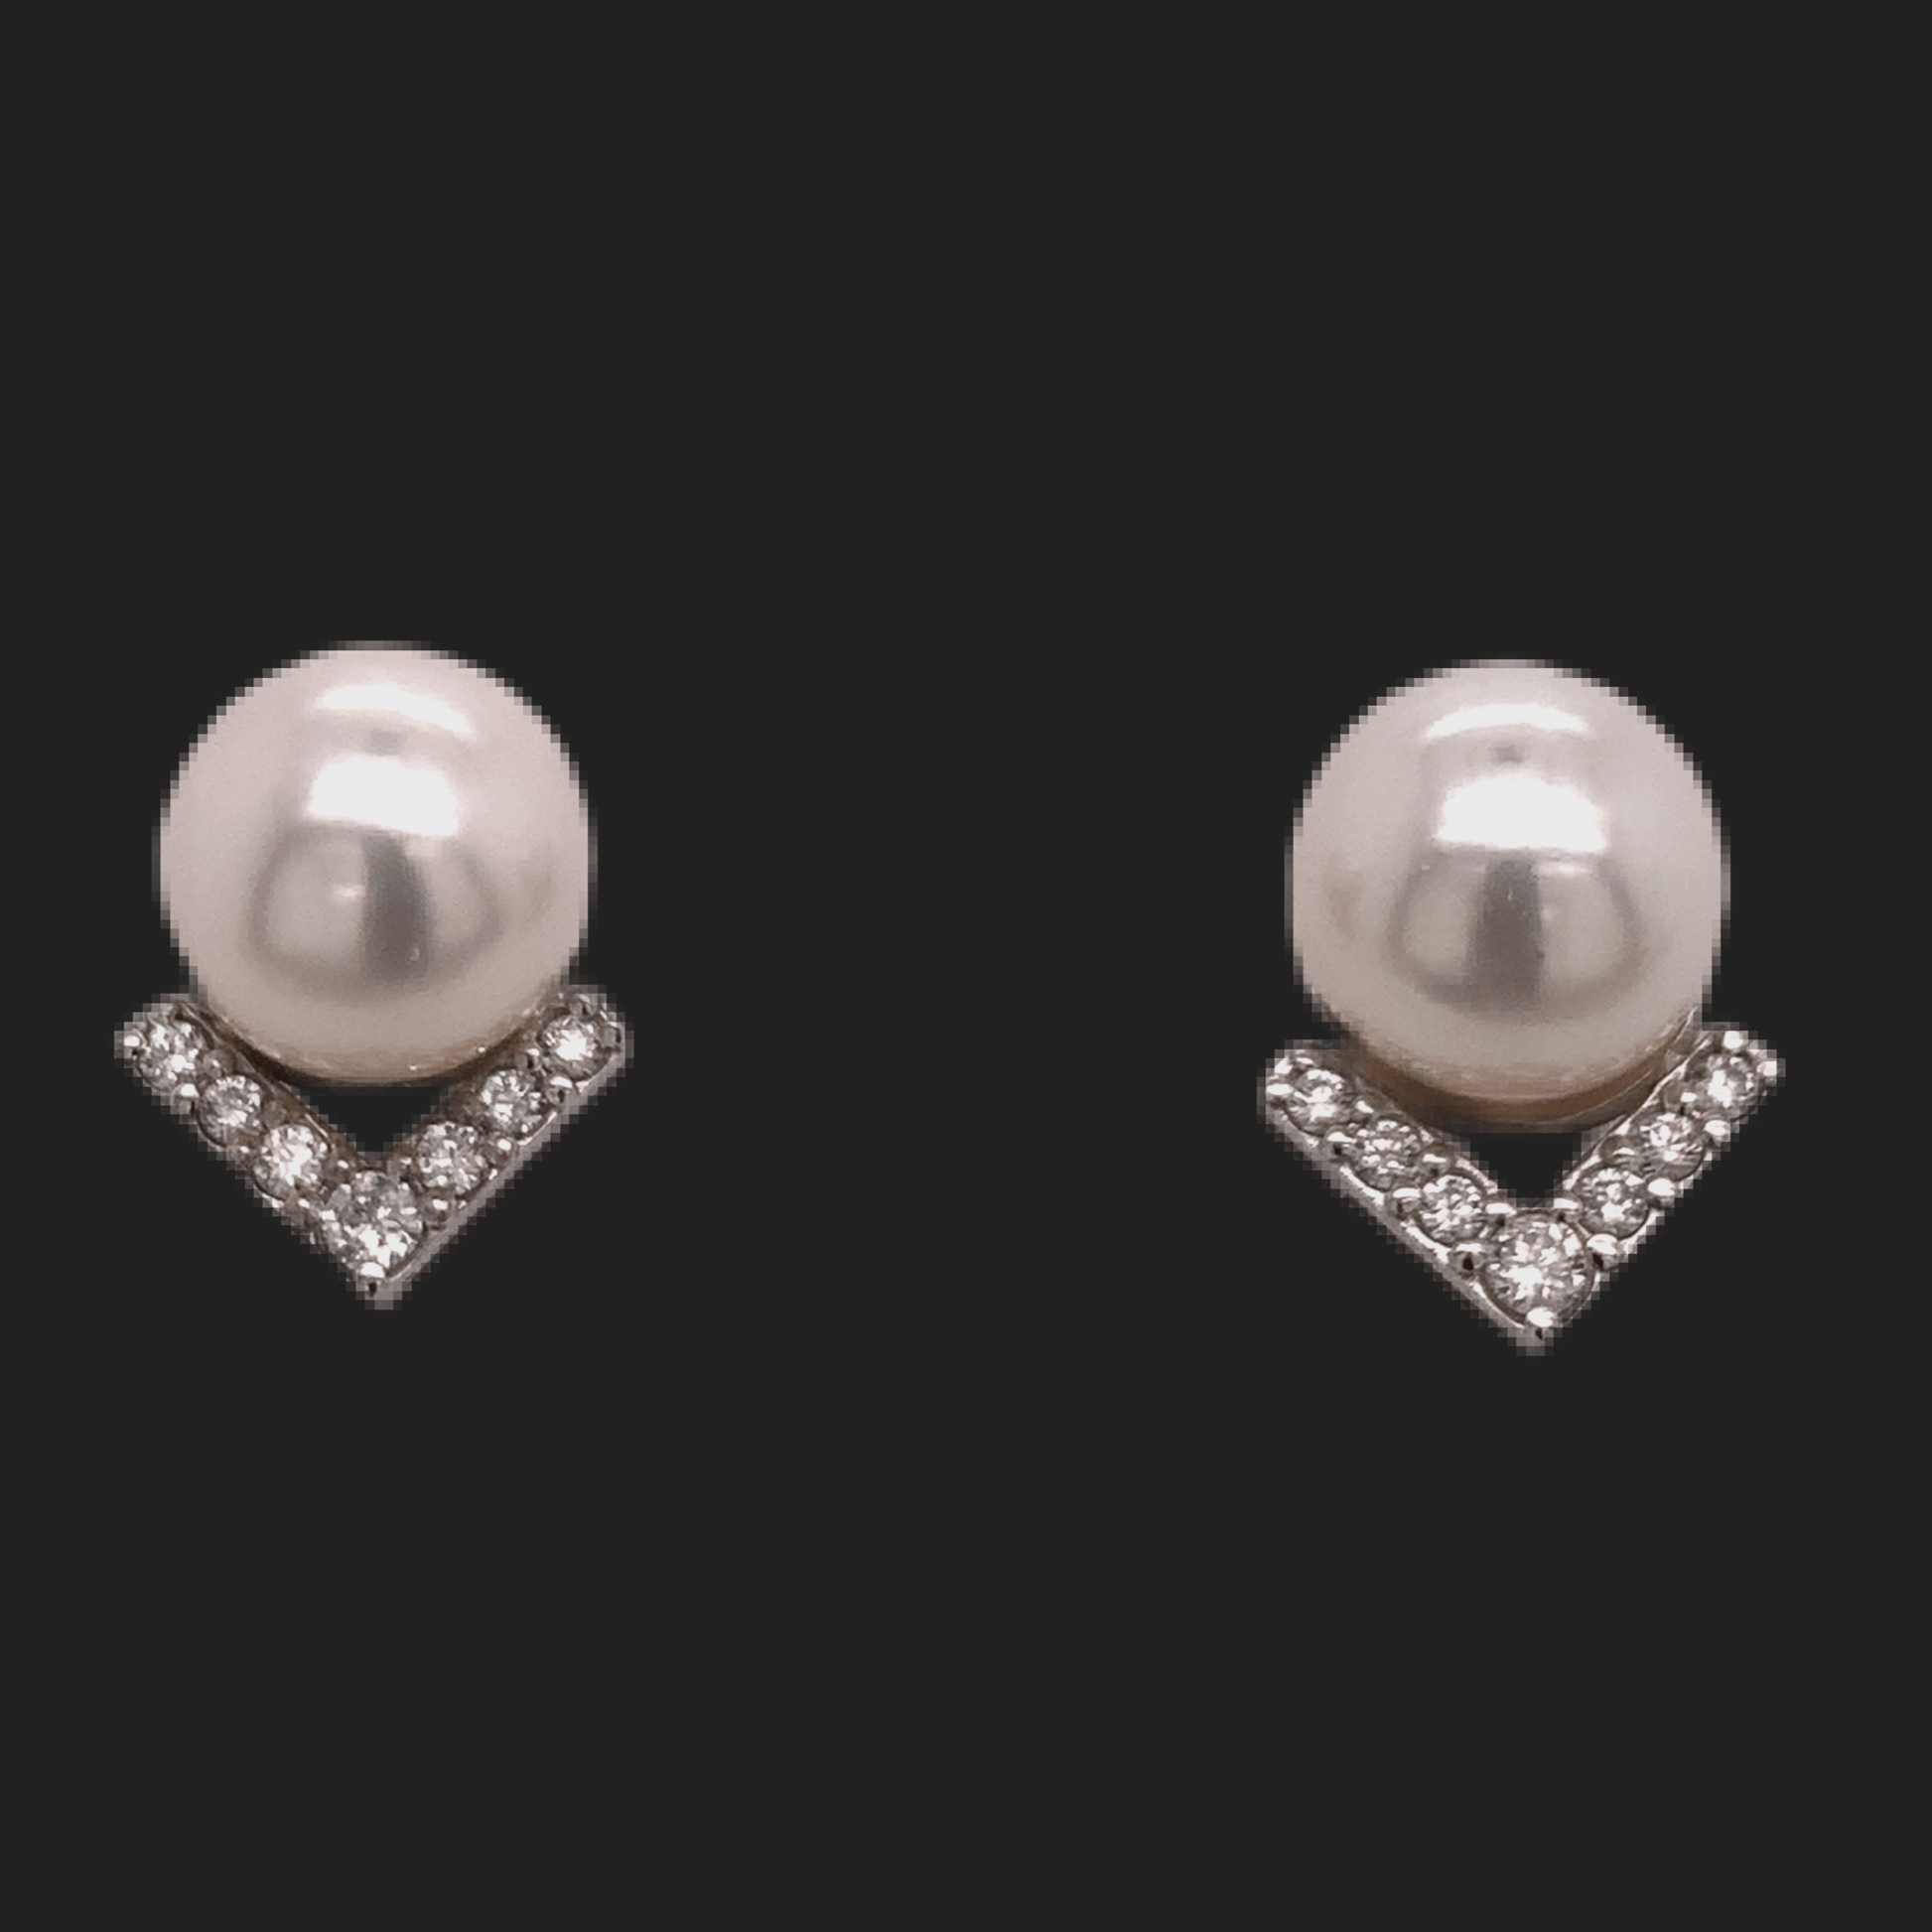 Akoya Pearl Diamond Earrings 14k Gold 9.5 mm 0.45 CTW Certified $3,975 111899 - Certified Fine Jewelry